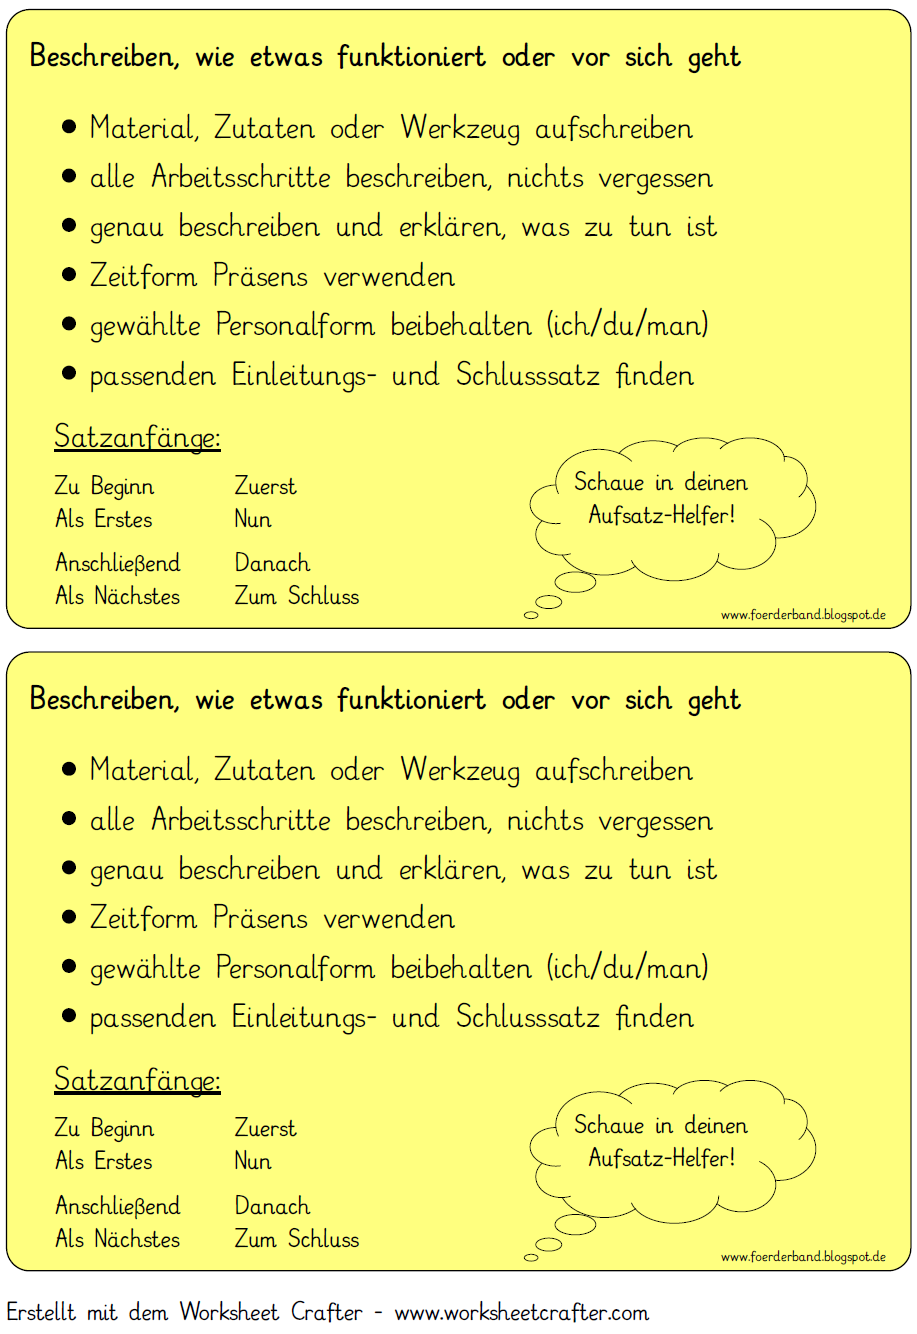 Vorgangsbeschreibung Checkliste Png 917 1334 Vorgangsbeschreibung Deutsch Unterricht Deutsche Schule